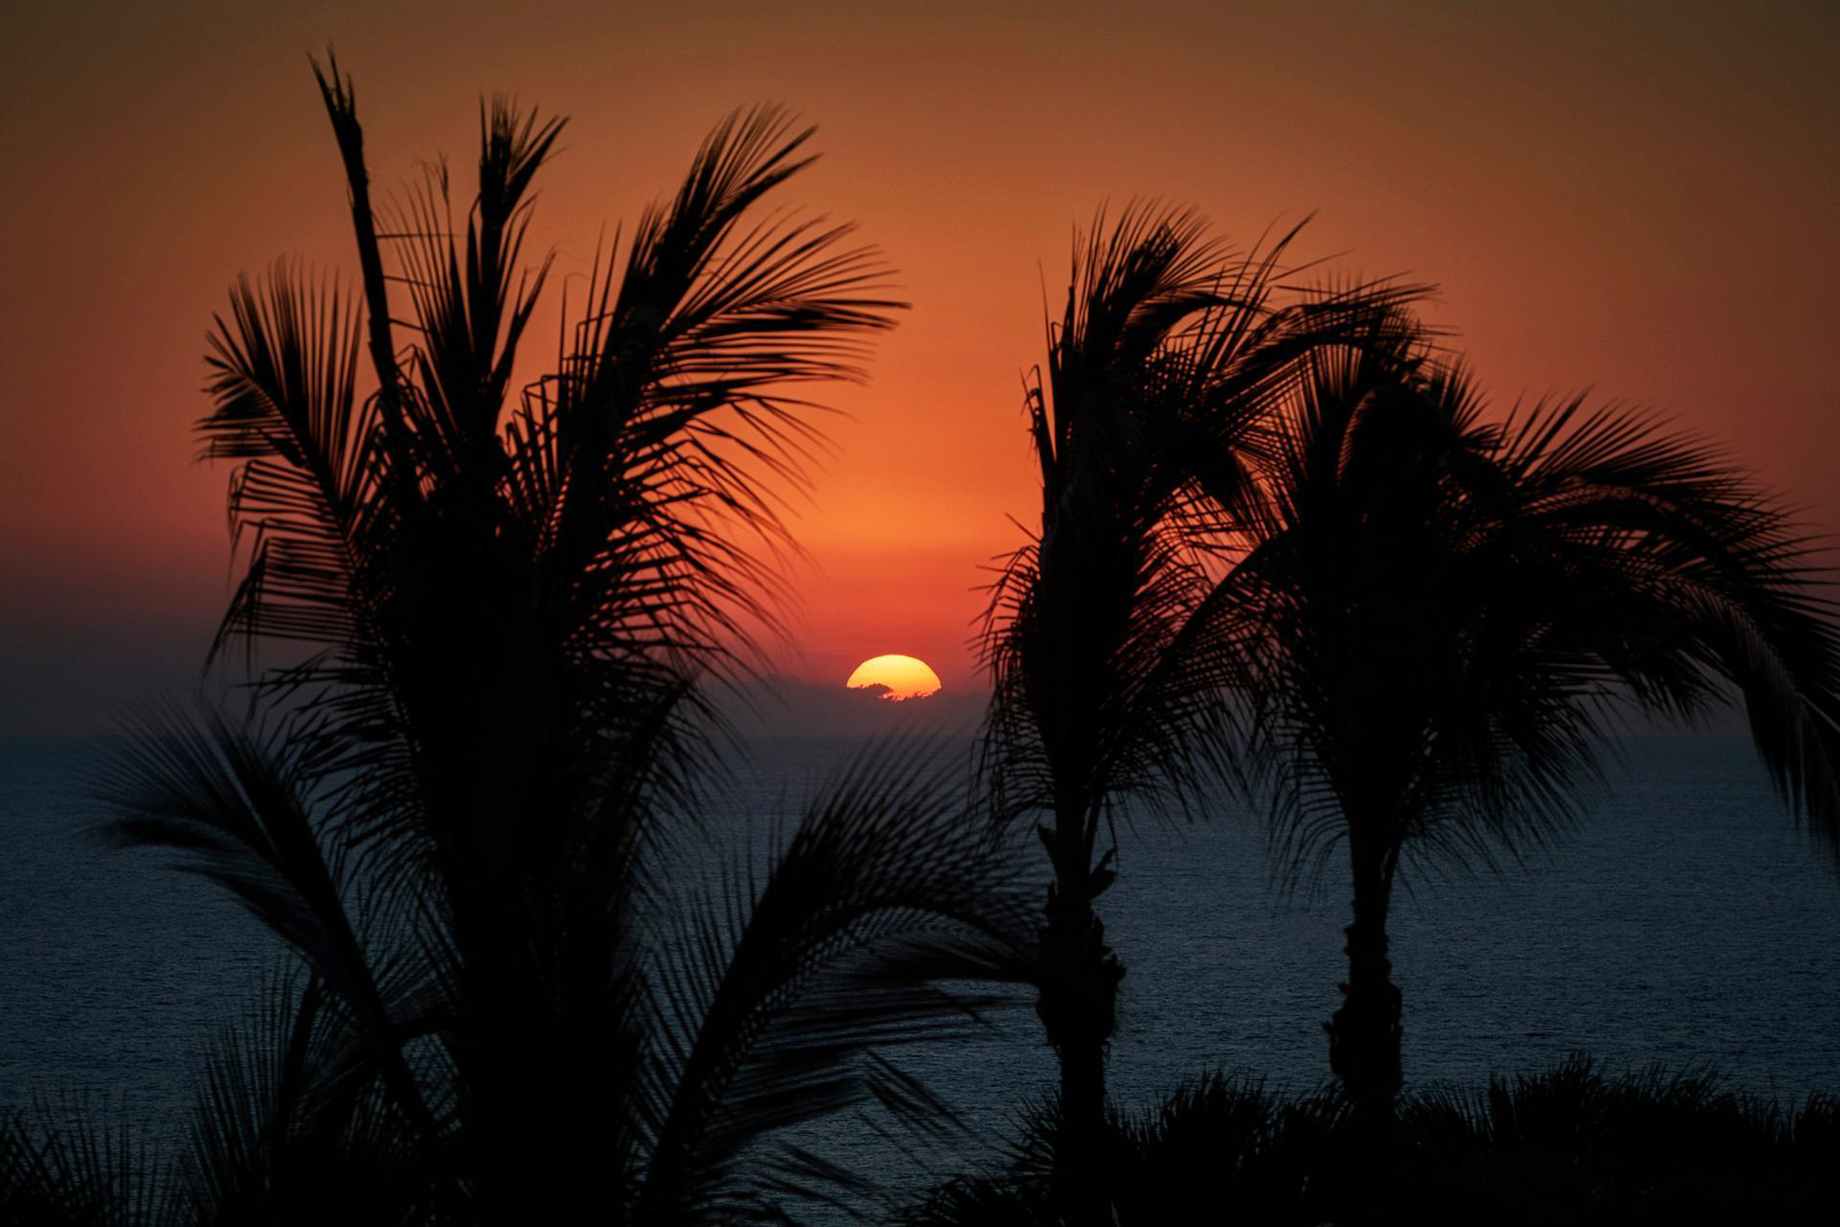 Four Seasons Resort Punta Mita – Nayarit, Mexico – Sunset